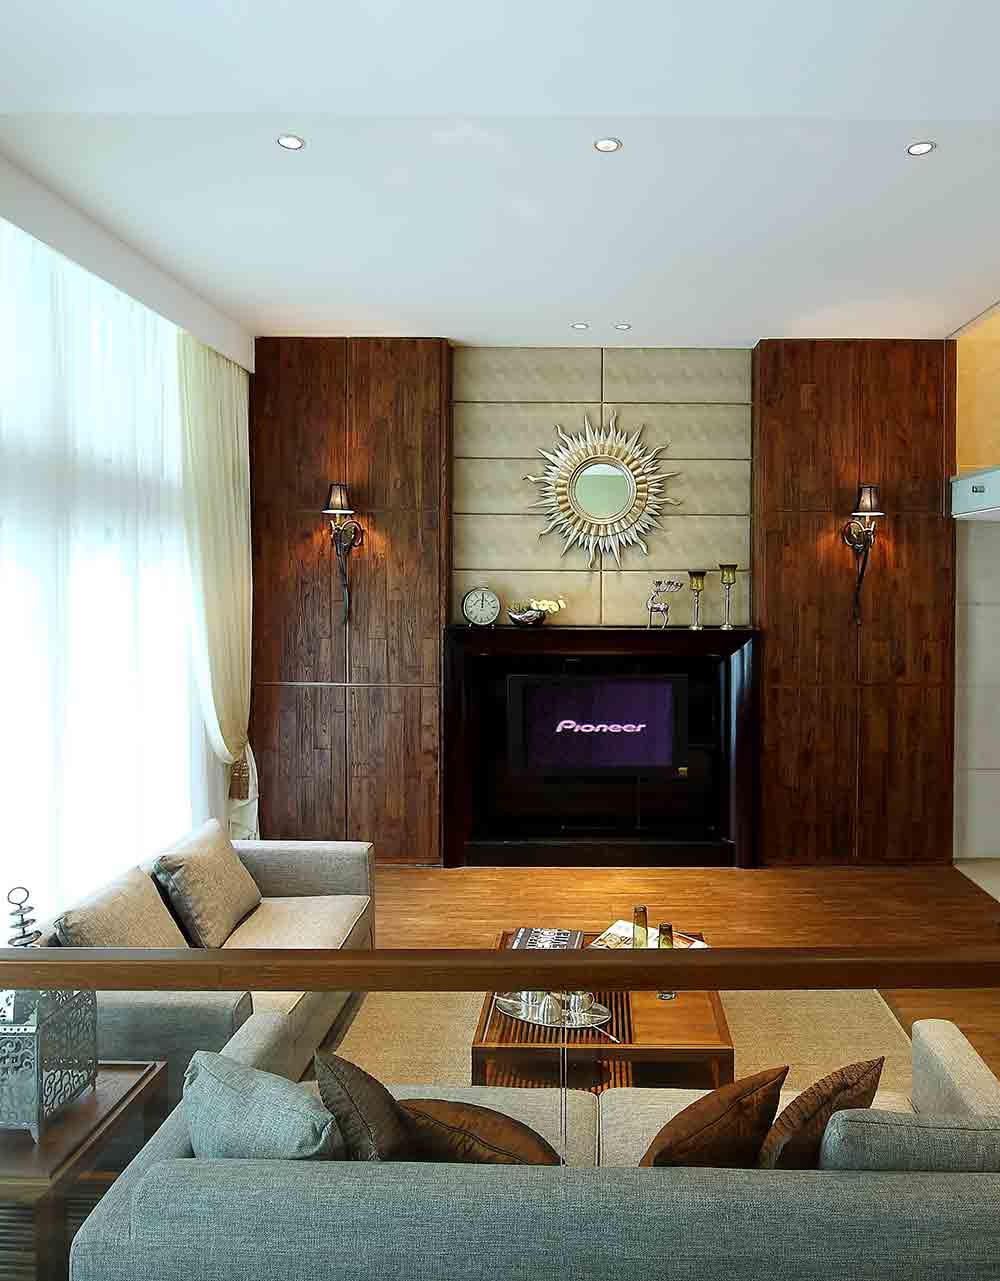 电视墙立面两侧规划木质收纳空间，再以两盏复古点缀，体现人文质感。